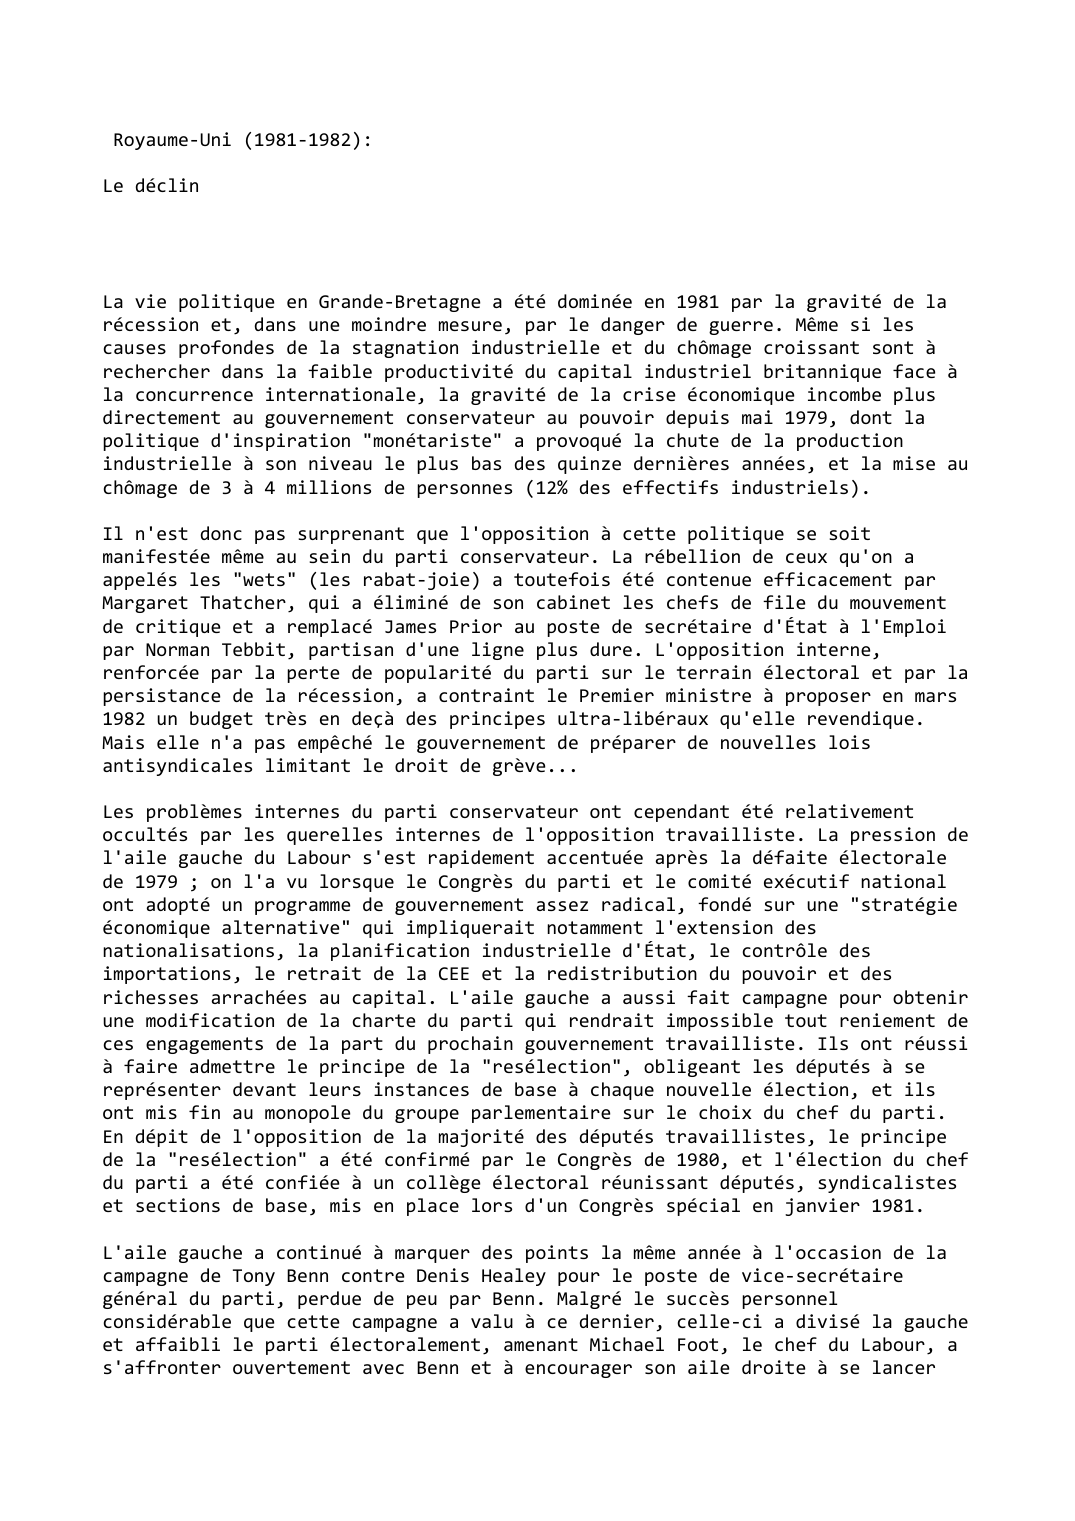 Prévisualisation du document Royaume-Uni (1981-1982):

Le déclin